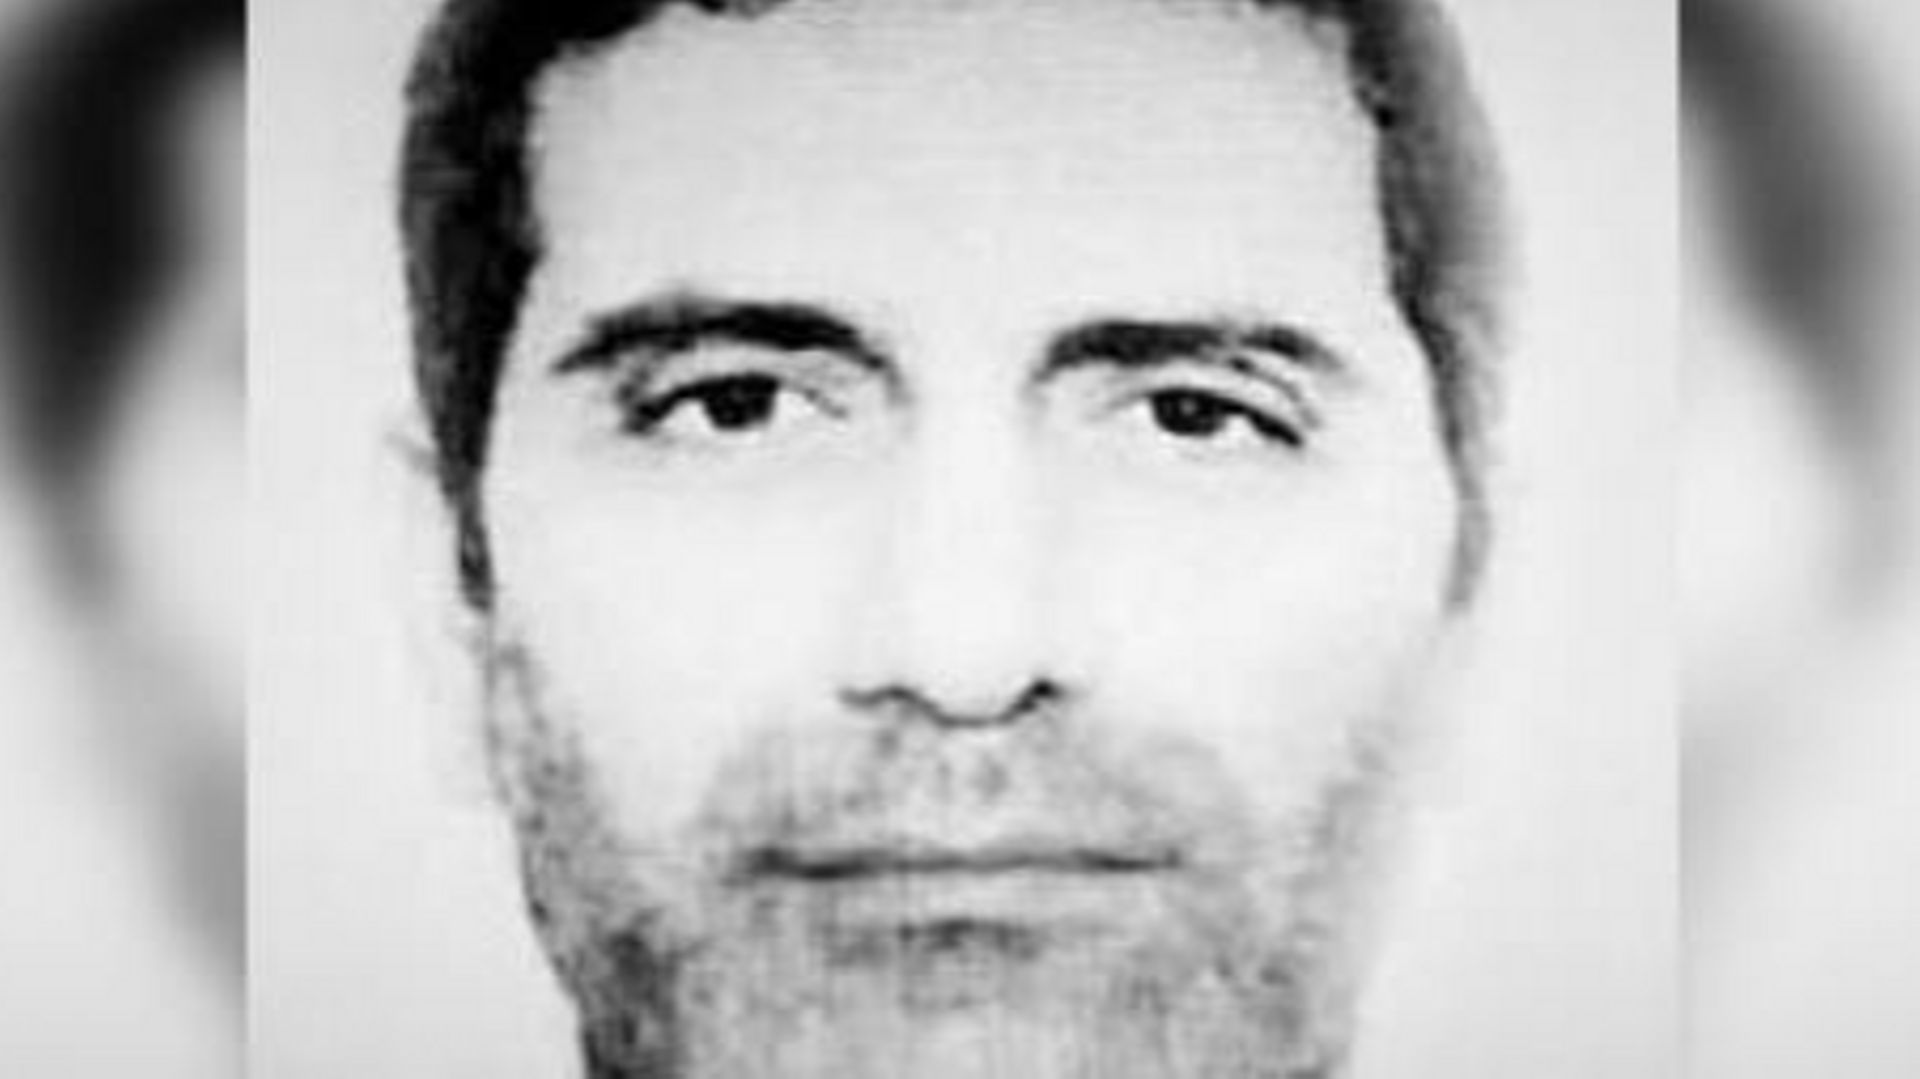 L'iranien Assadolah Assadi a été condamné en Belgique en 2021 à 20 ans de prison, pour un projet d'attentat en France.